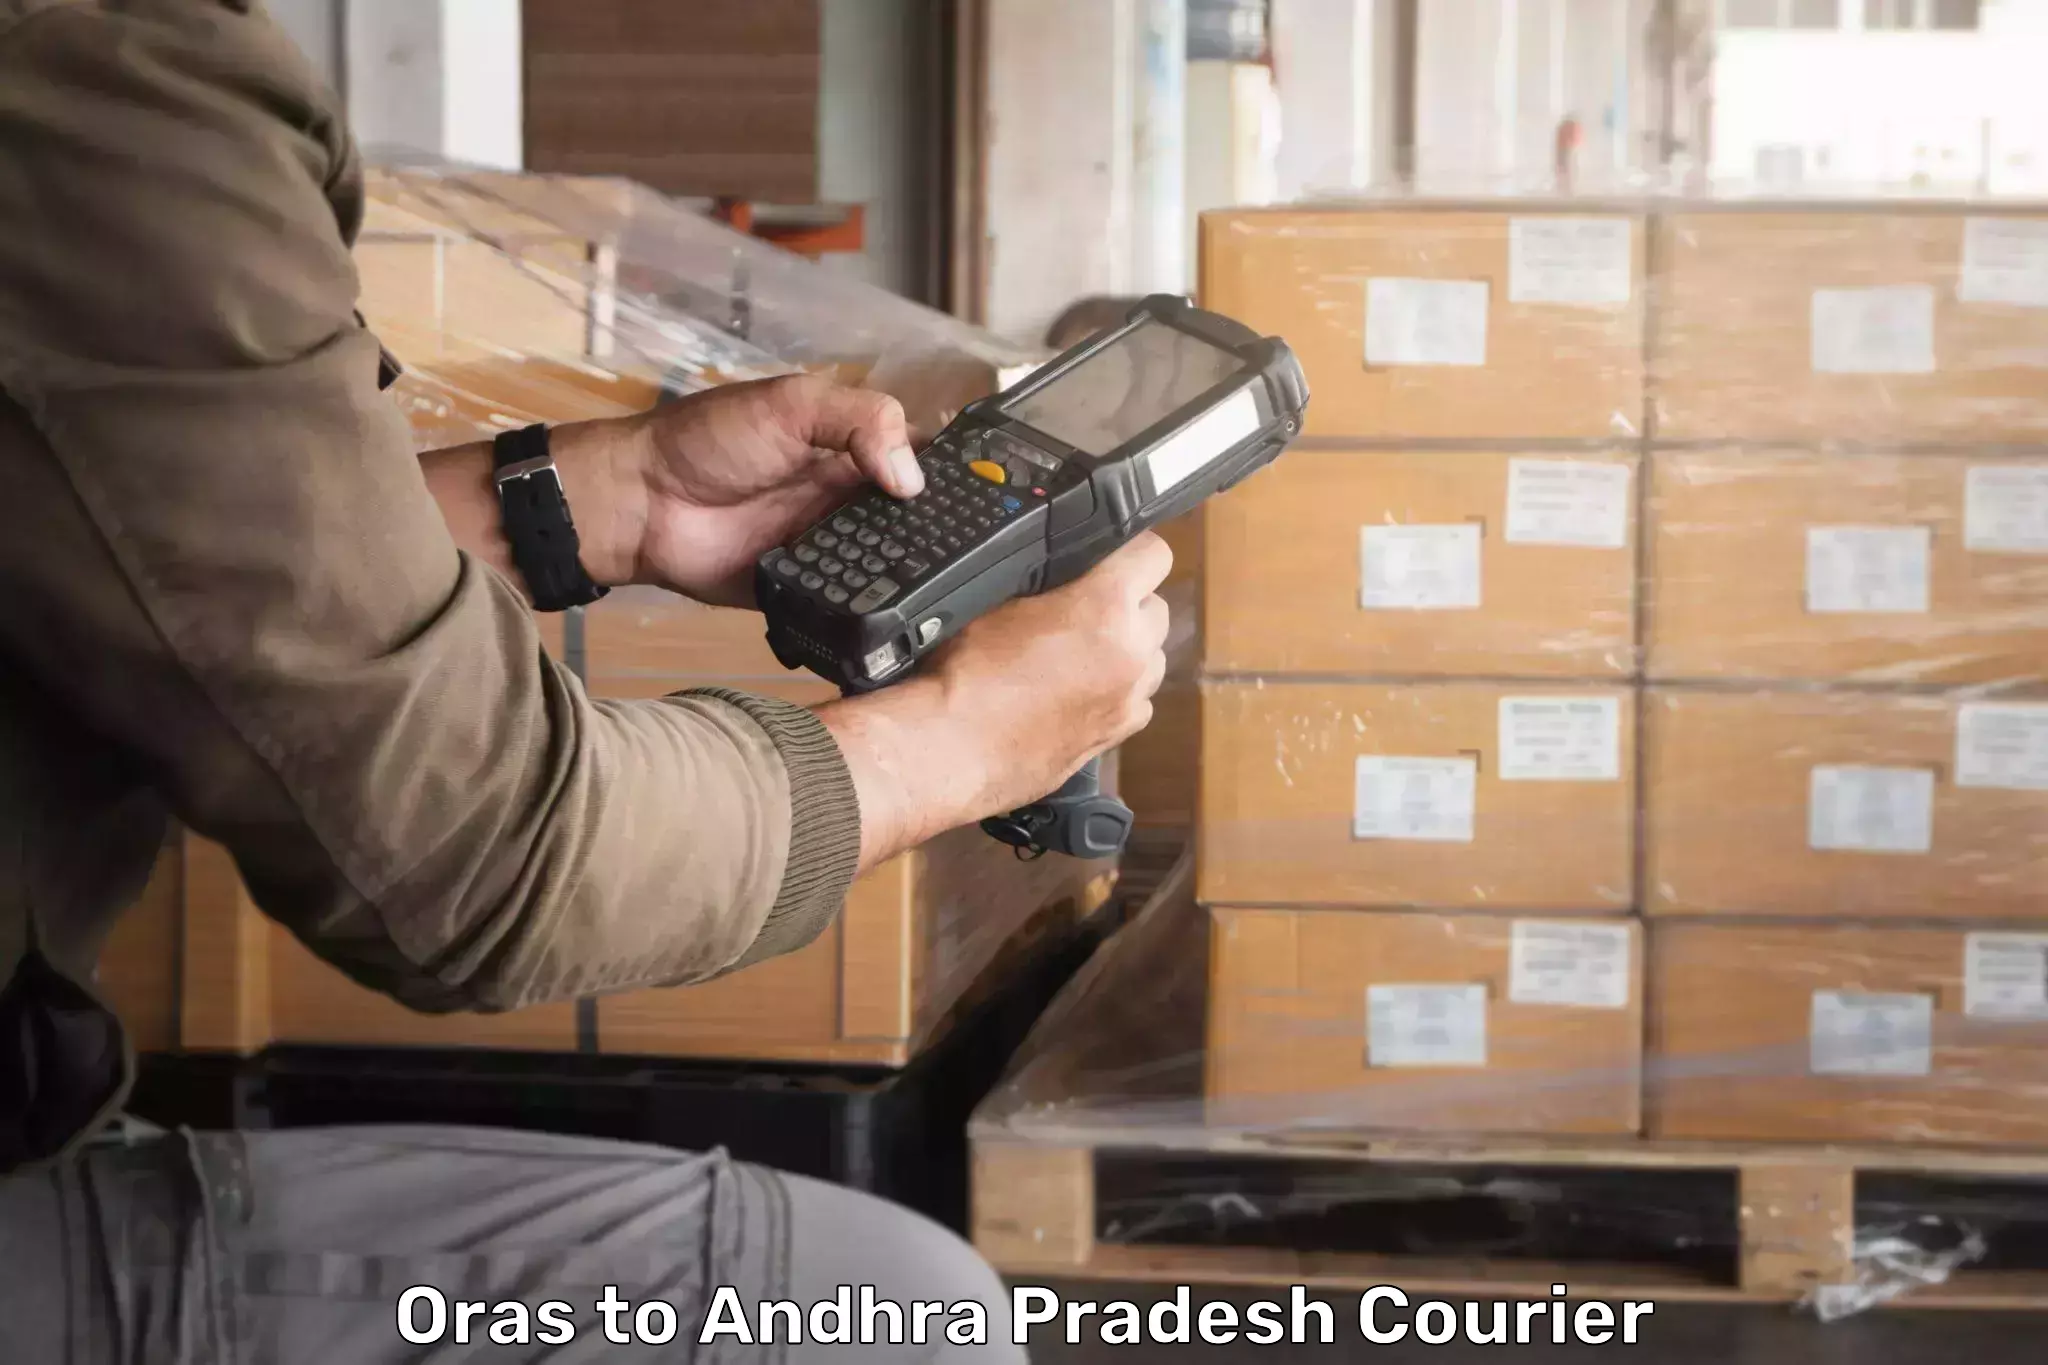 24/7 courier service Oras to Andhra Pradesh